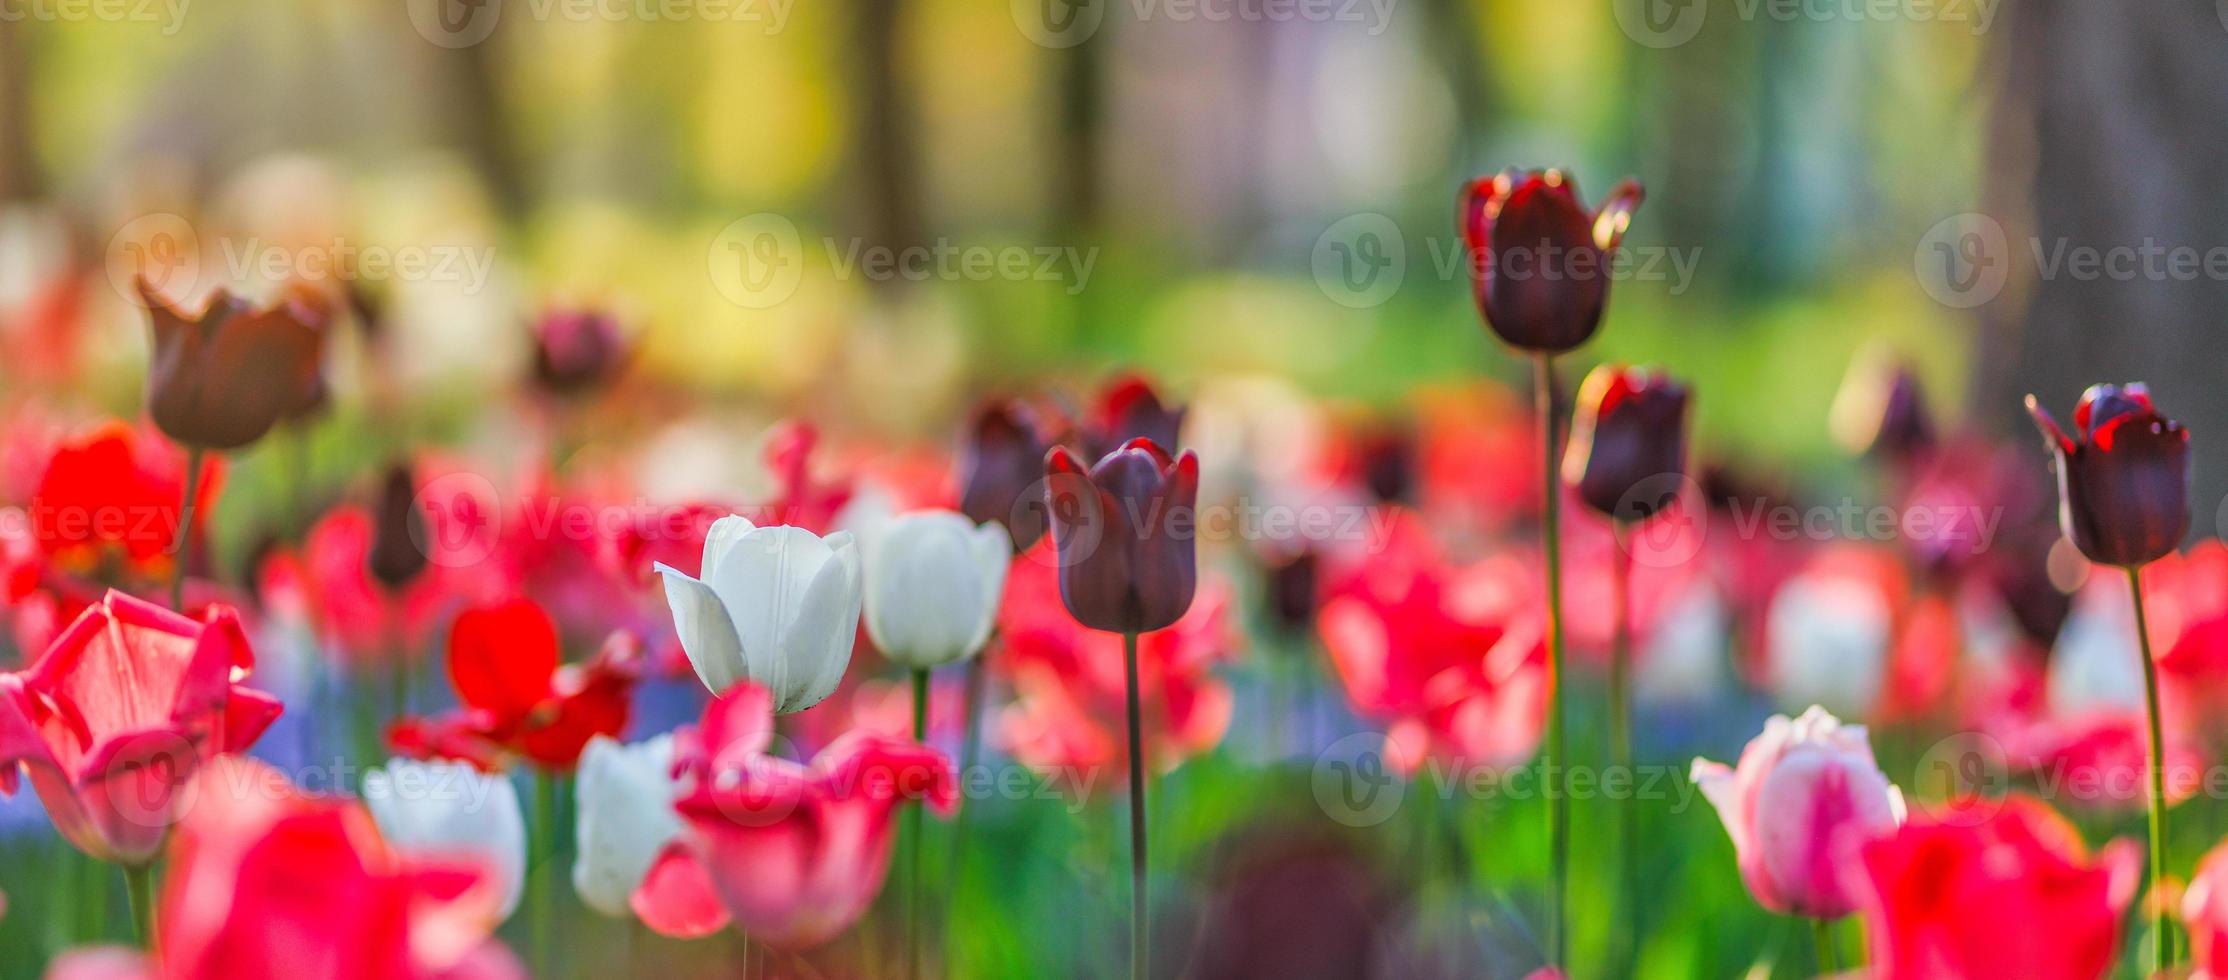 hermosos tulipanes coloridos en el paisaje de naturaleza soleada de primavera borrosa. panorama de flores de tulipanes florecientes brillantes para el concepto de amor de la naturaleza primaveral. asombrosa escena de manantial natural, diseño, estandarte floral tranquilo foto